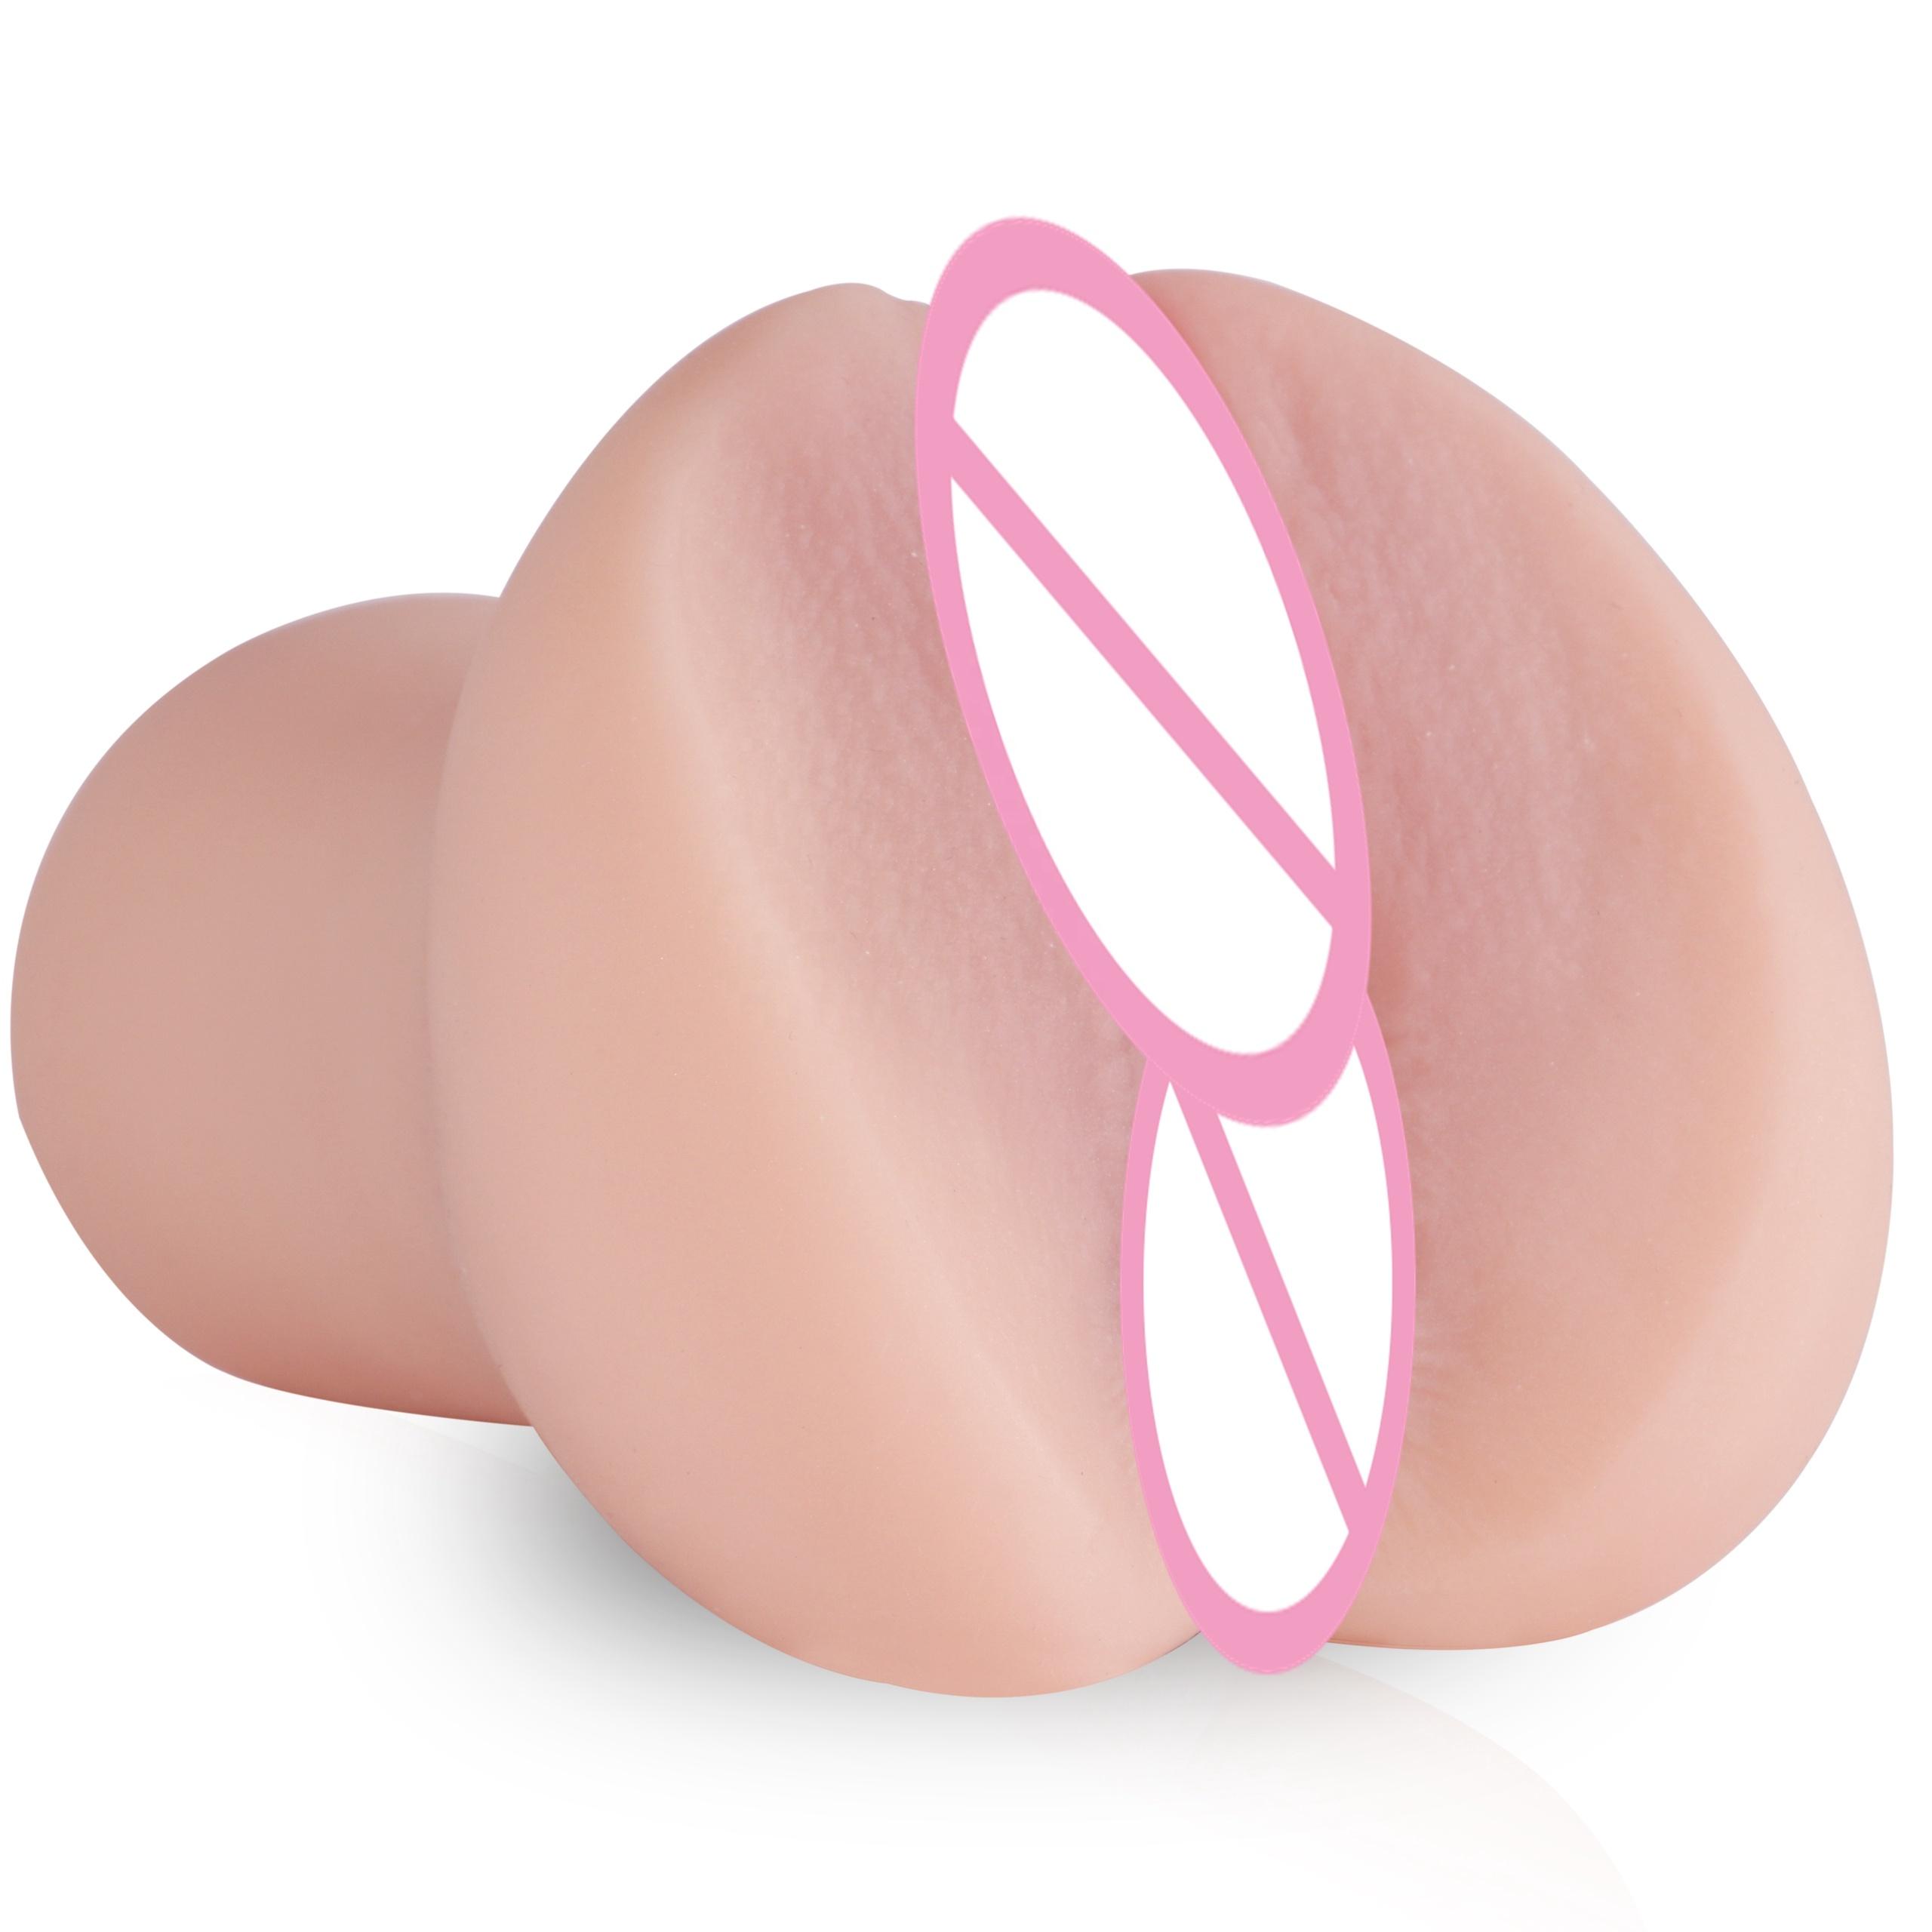 Shequ Men Masturbating Pocket Pussy Women Sexy Vagina Sex Toys For Men Penis Massage